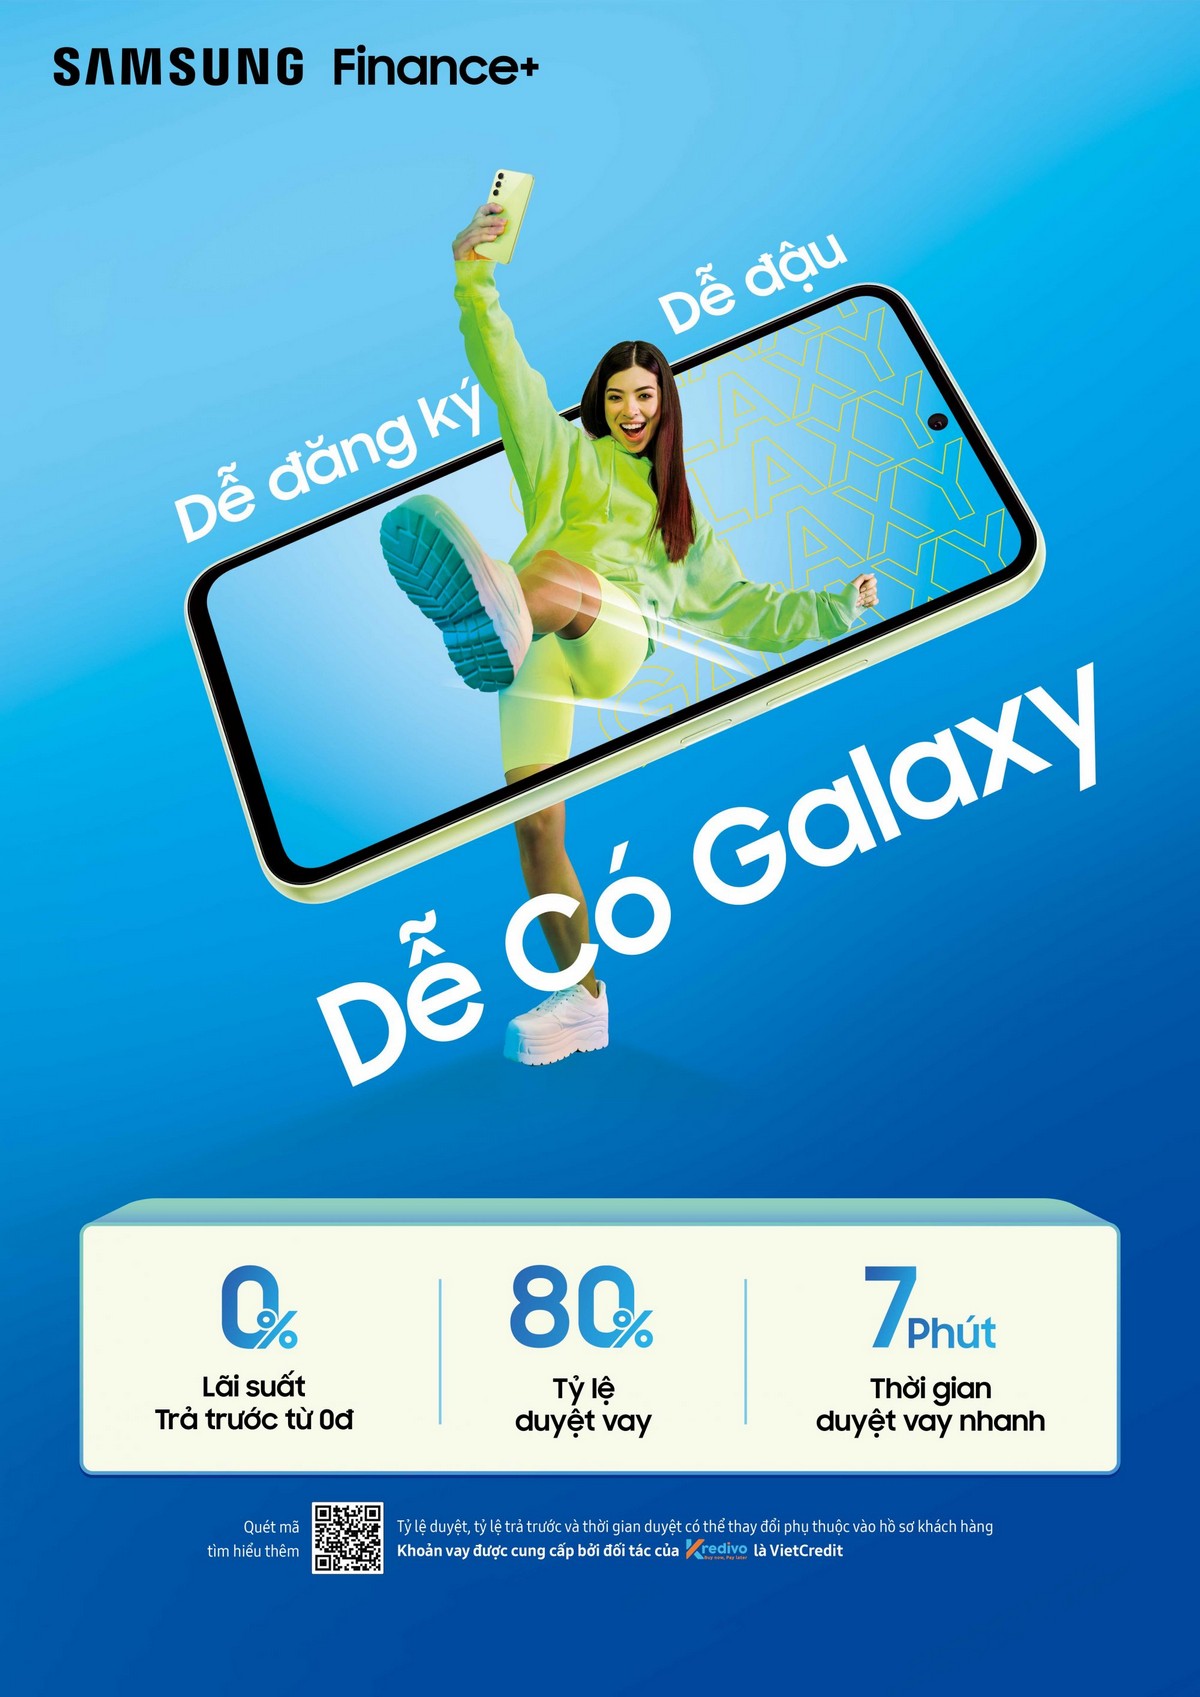 Ra mắt Samsung Finance+ tại thị trường Việt Nam